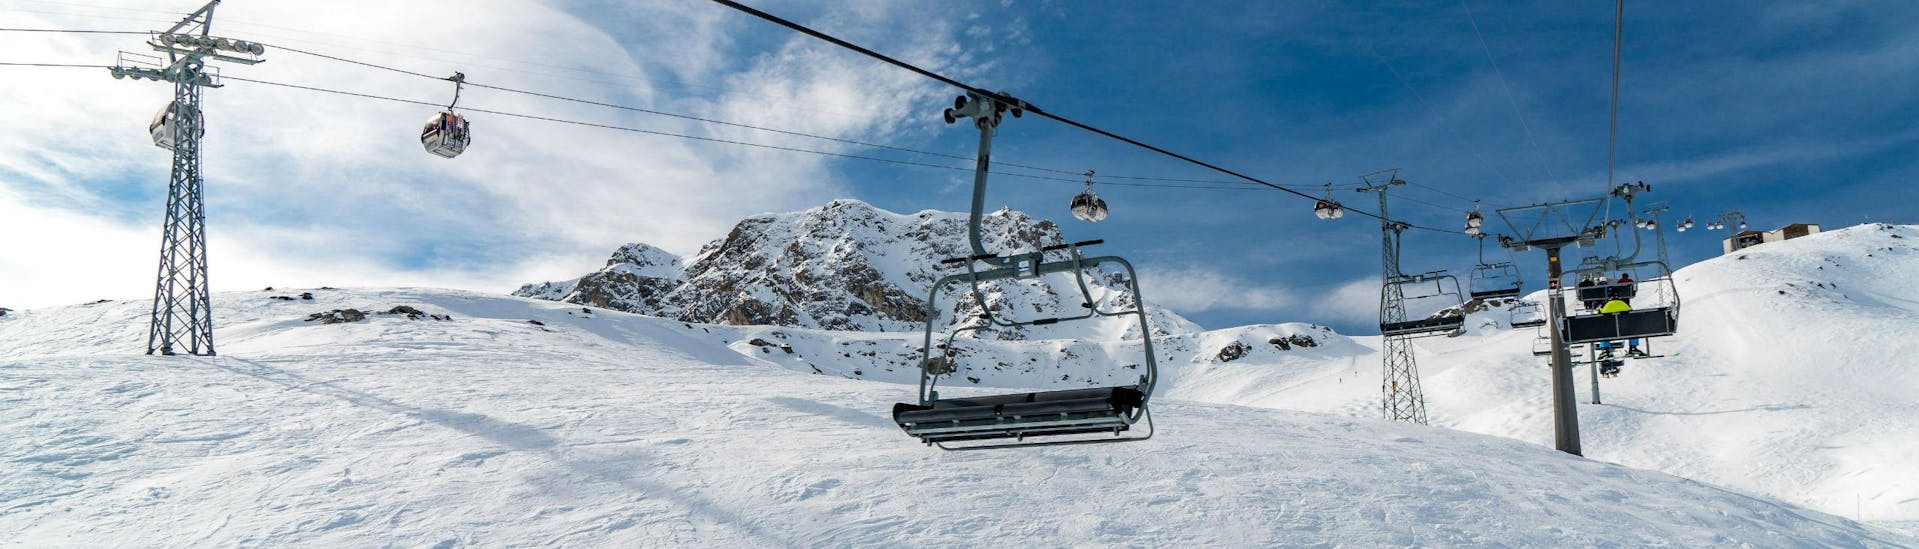 Ein Bild eines Sessellifts und einer Gondel im schweizerischen Skigebiet Arosa, wo örtliche Skischulen ihre Skikurse für Besucher, die das Skifahren lernen wollen, anbieten.